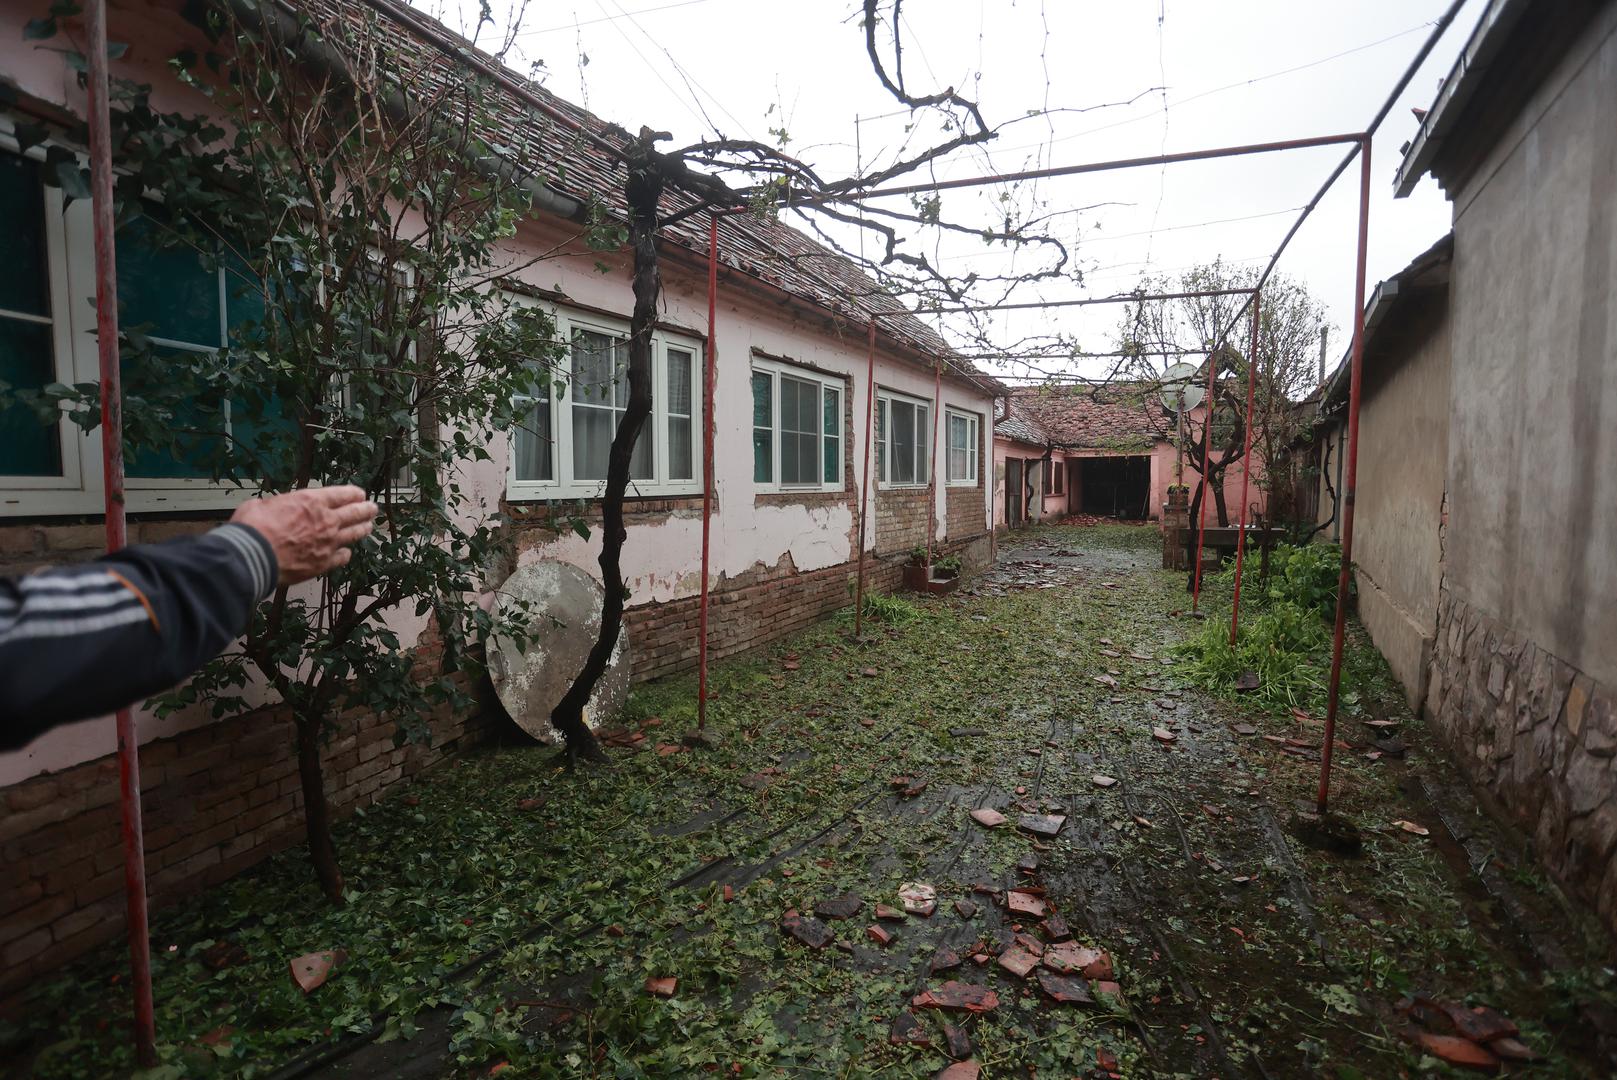 Fotografije pokazuju razmjere devastacije: uništene krovove, razbijene fasade i polomljene prozore. 